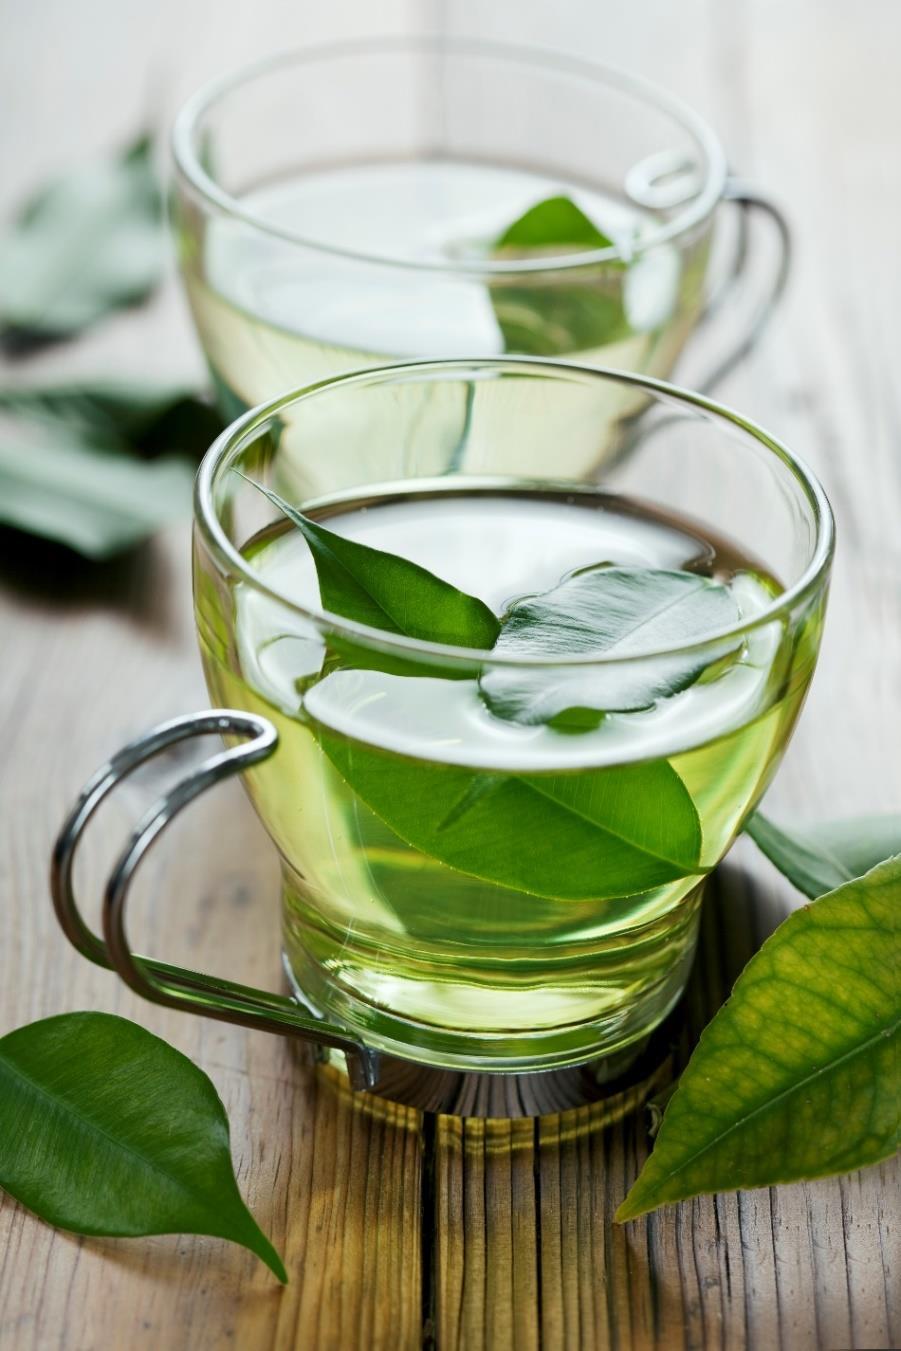 ZAĻĀ TĒJA Zaļā tēja ir viens no veselīgākajiem dzērieniem, kurš satur uzturvielas, kas labvēlīgi ietekmē organismu. Zaļās tējas ekstrakts satur daudz polifenolu, flavonoīdi un katehīni.